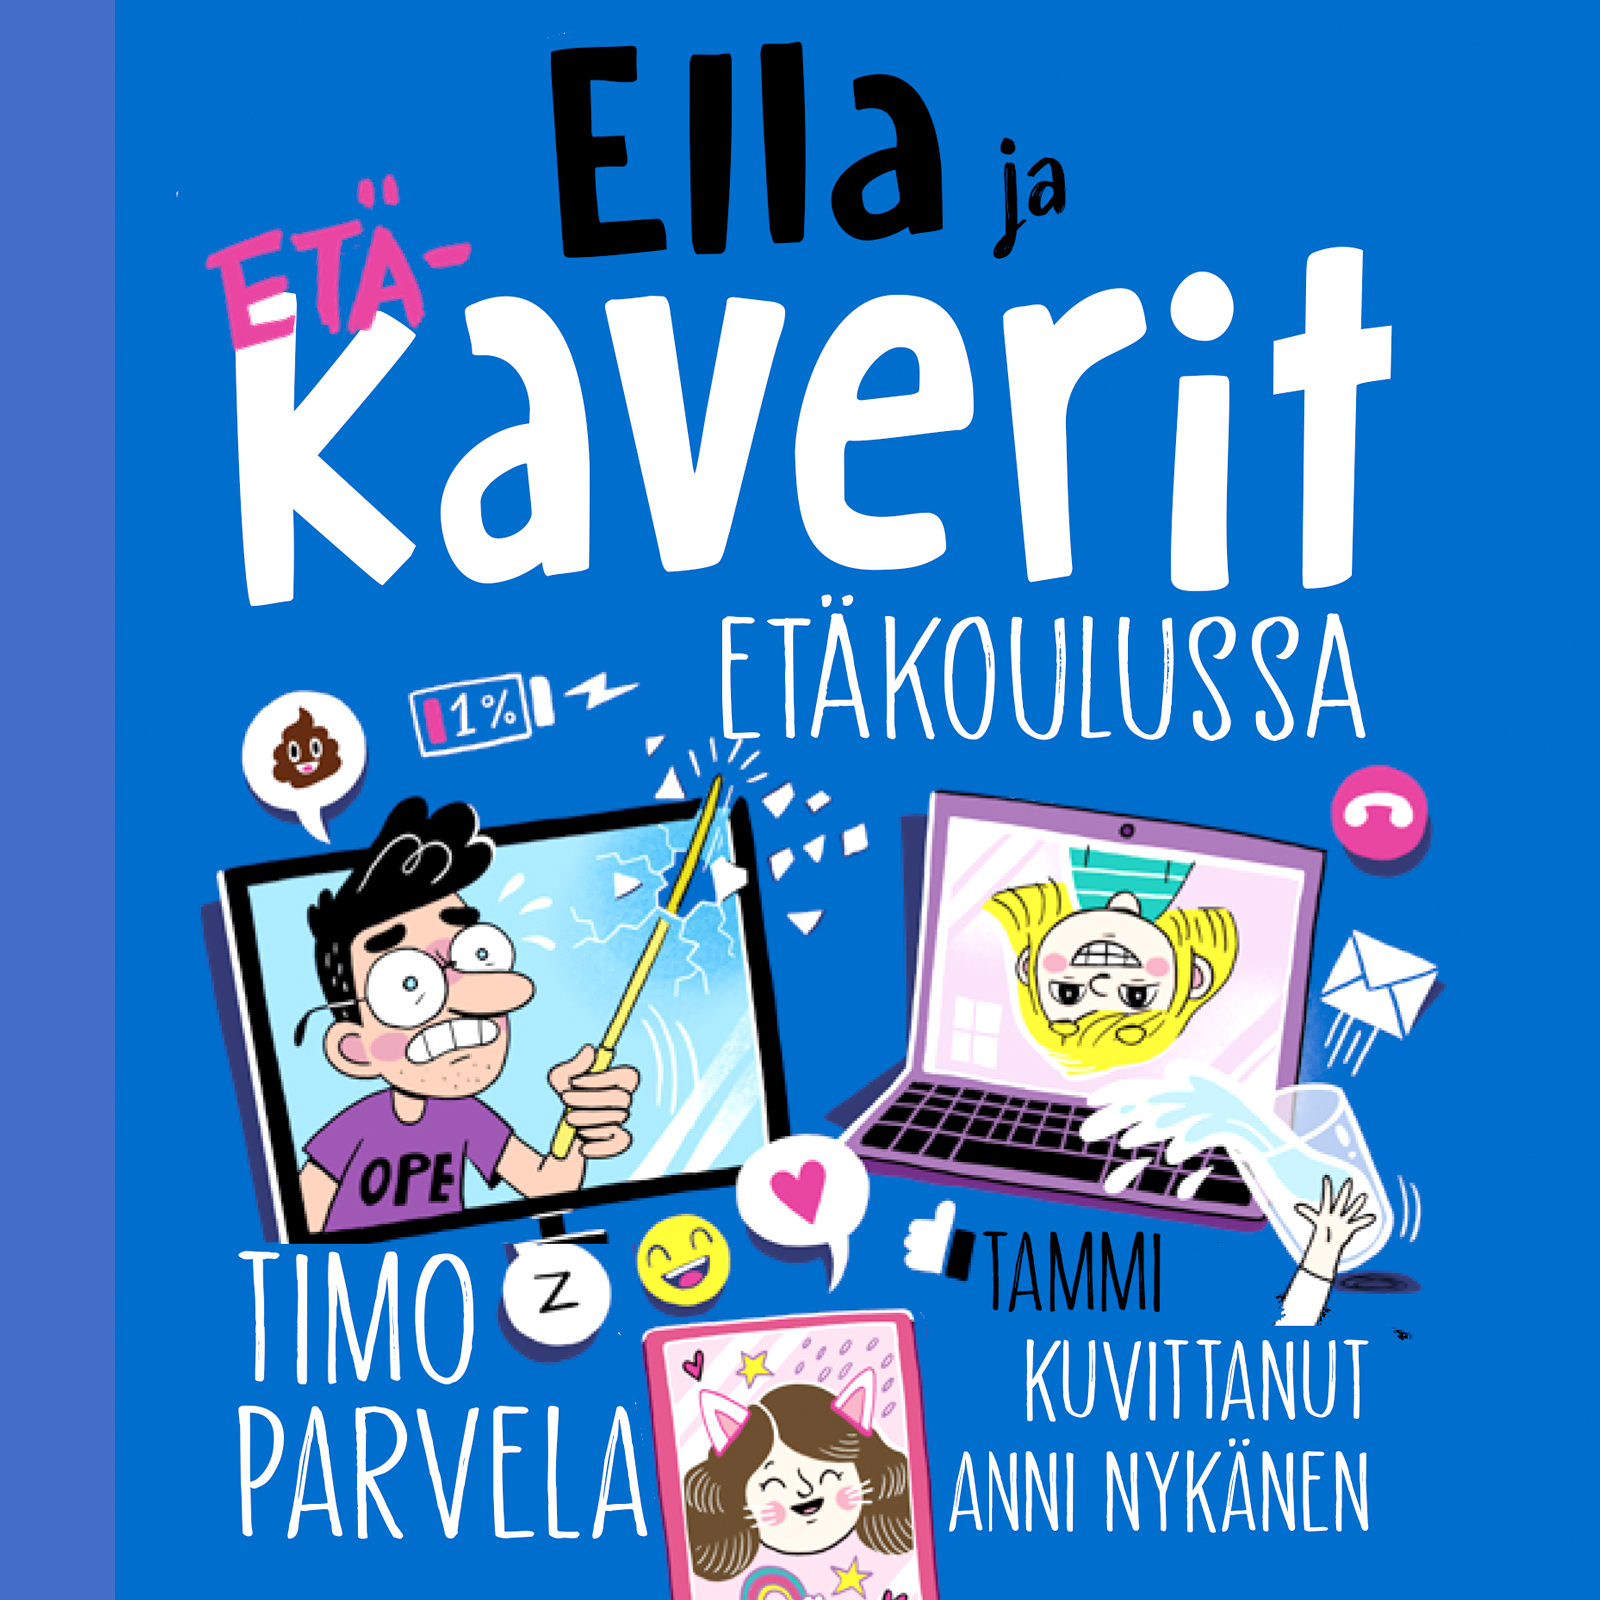 Parvela, Timo - Ella ja kaverit etäkoulussa, audiobook